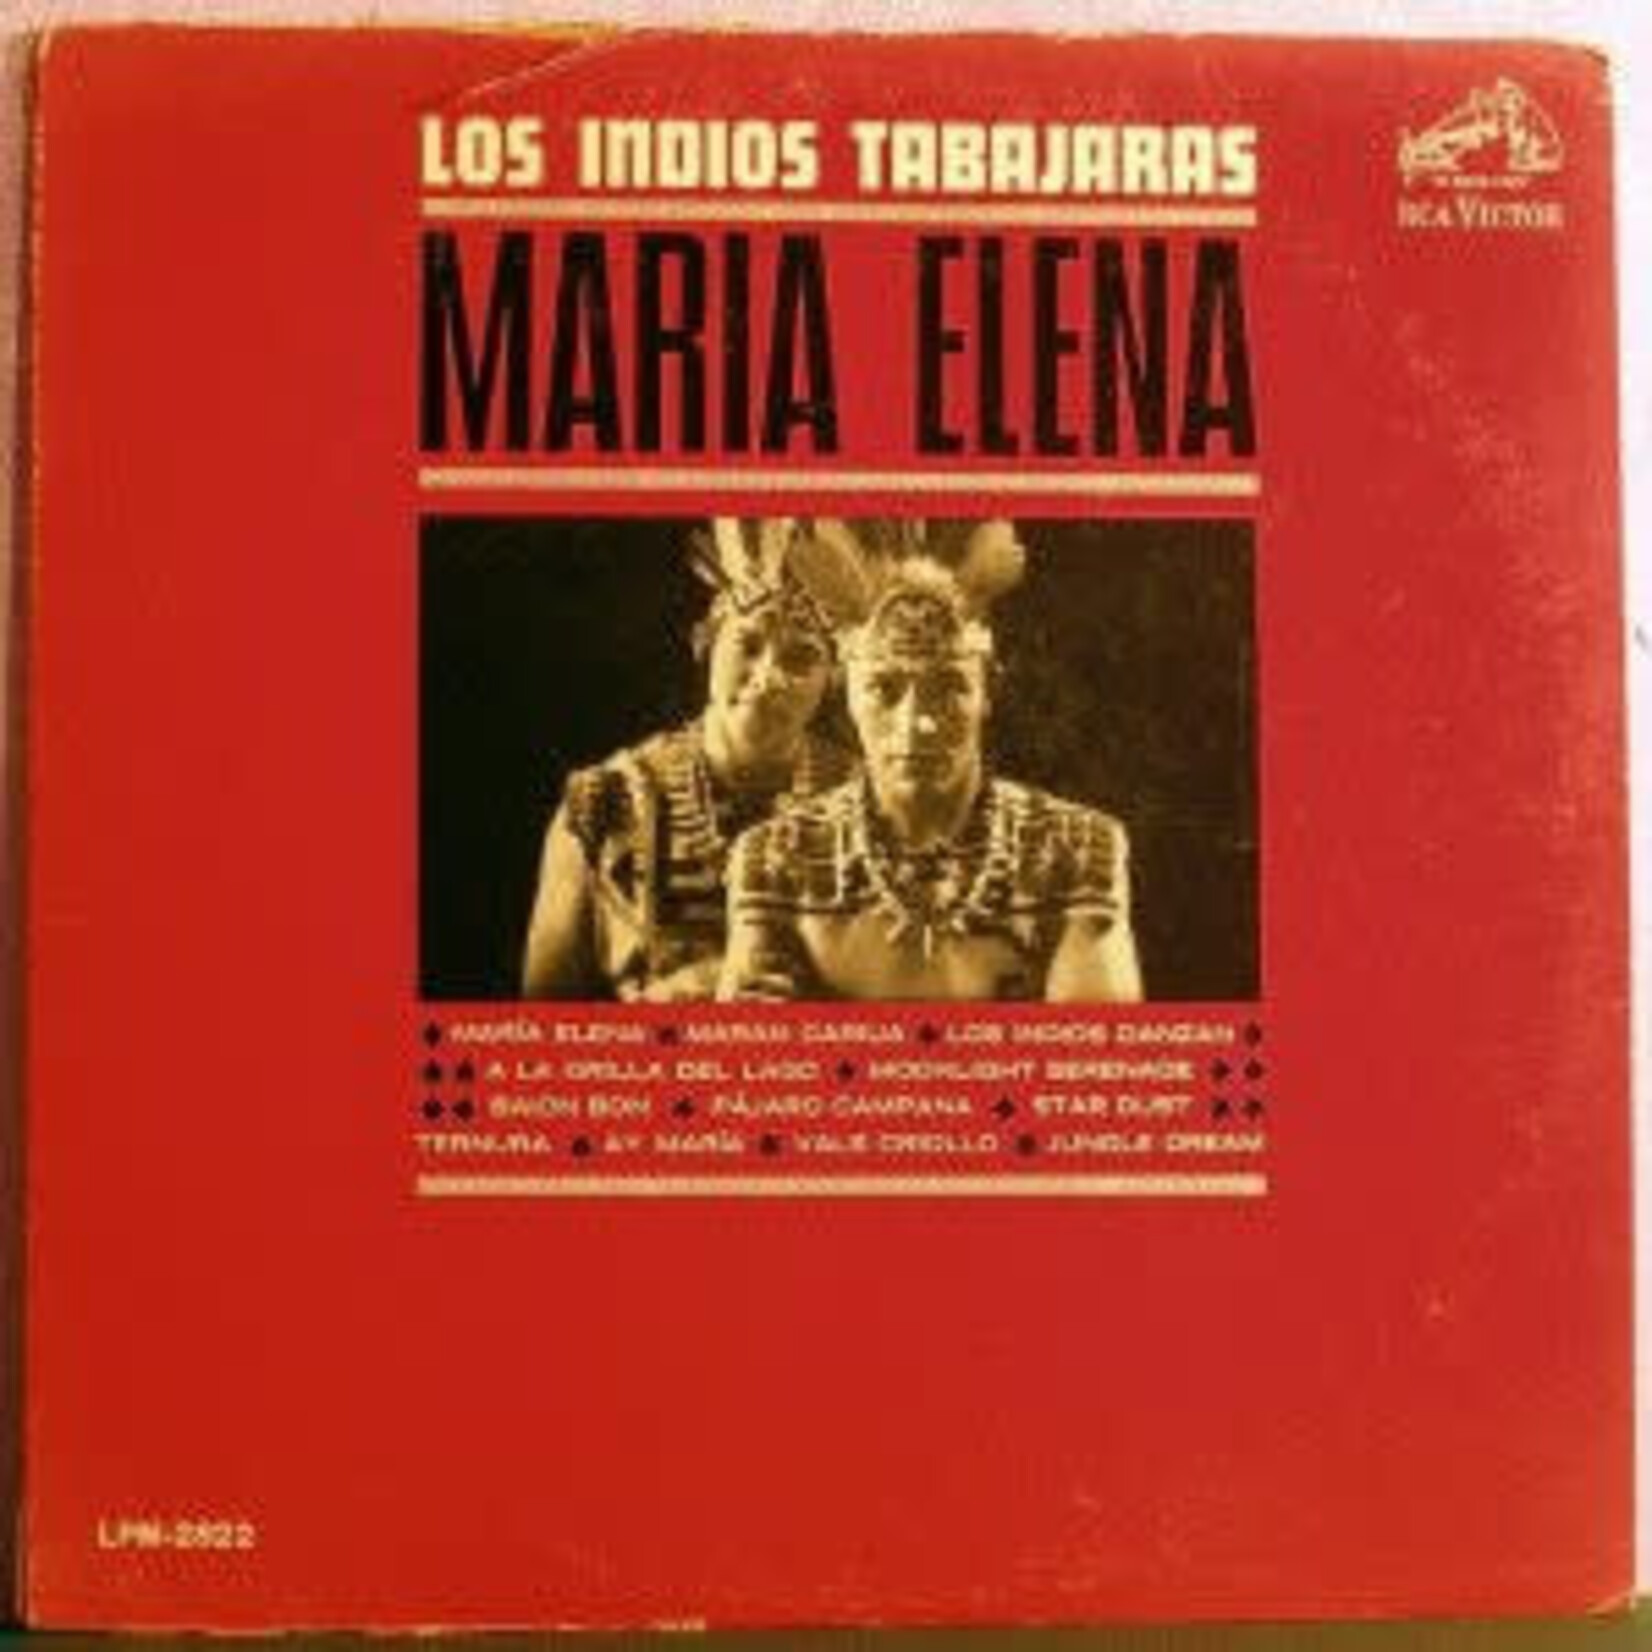 Los Indios Tabajaras Los Indios Tabajaras – Maria Elena (VG, 1964, LP, RCA Victor – LPM 2822)